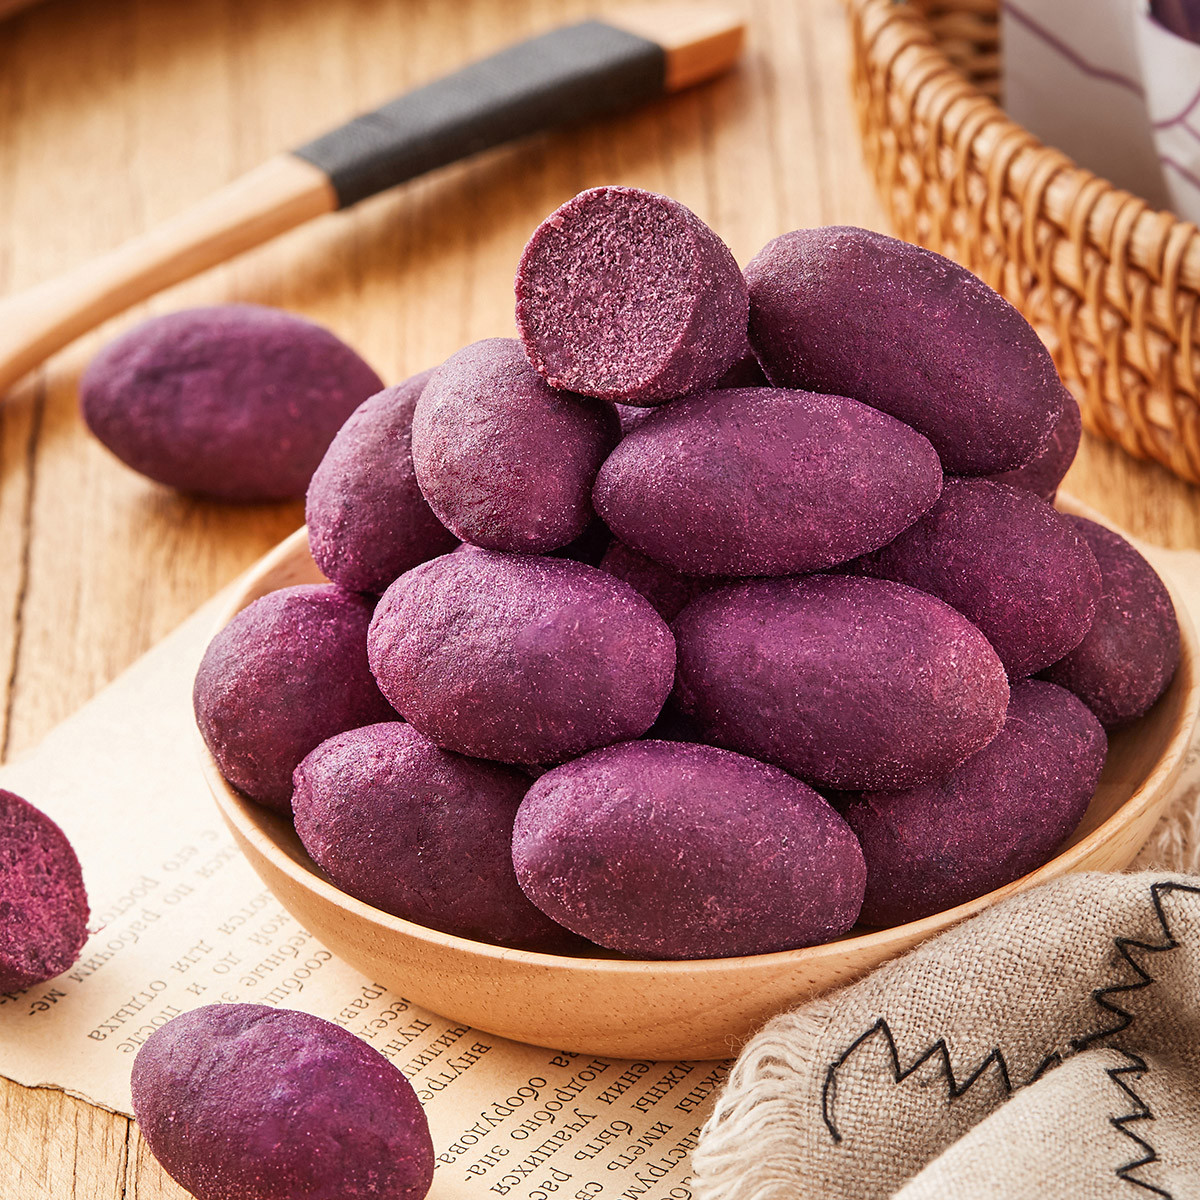 100g紫薯多大图片图片